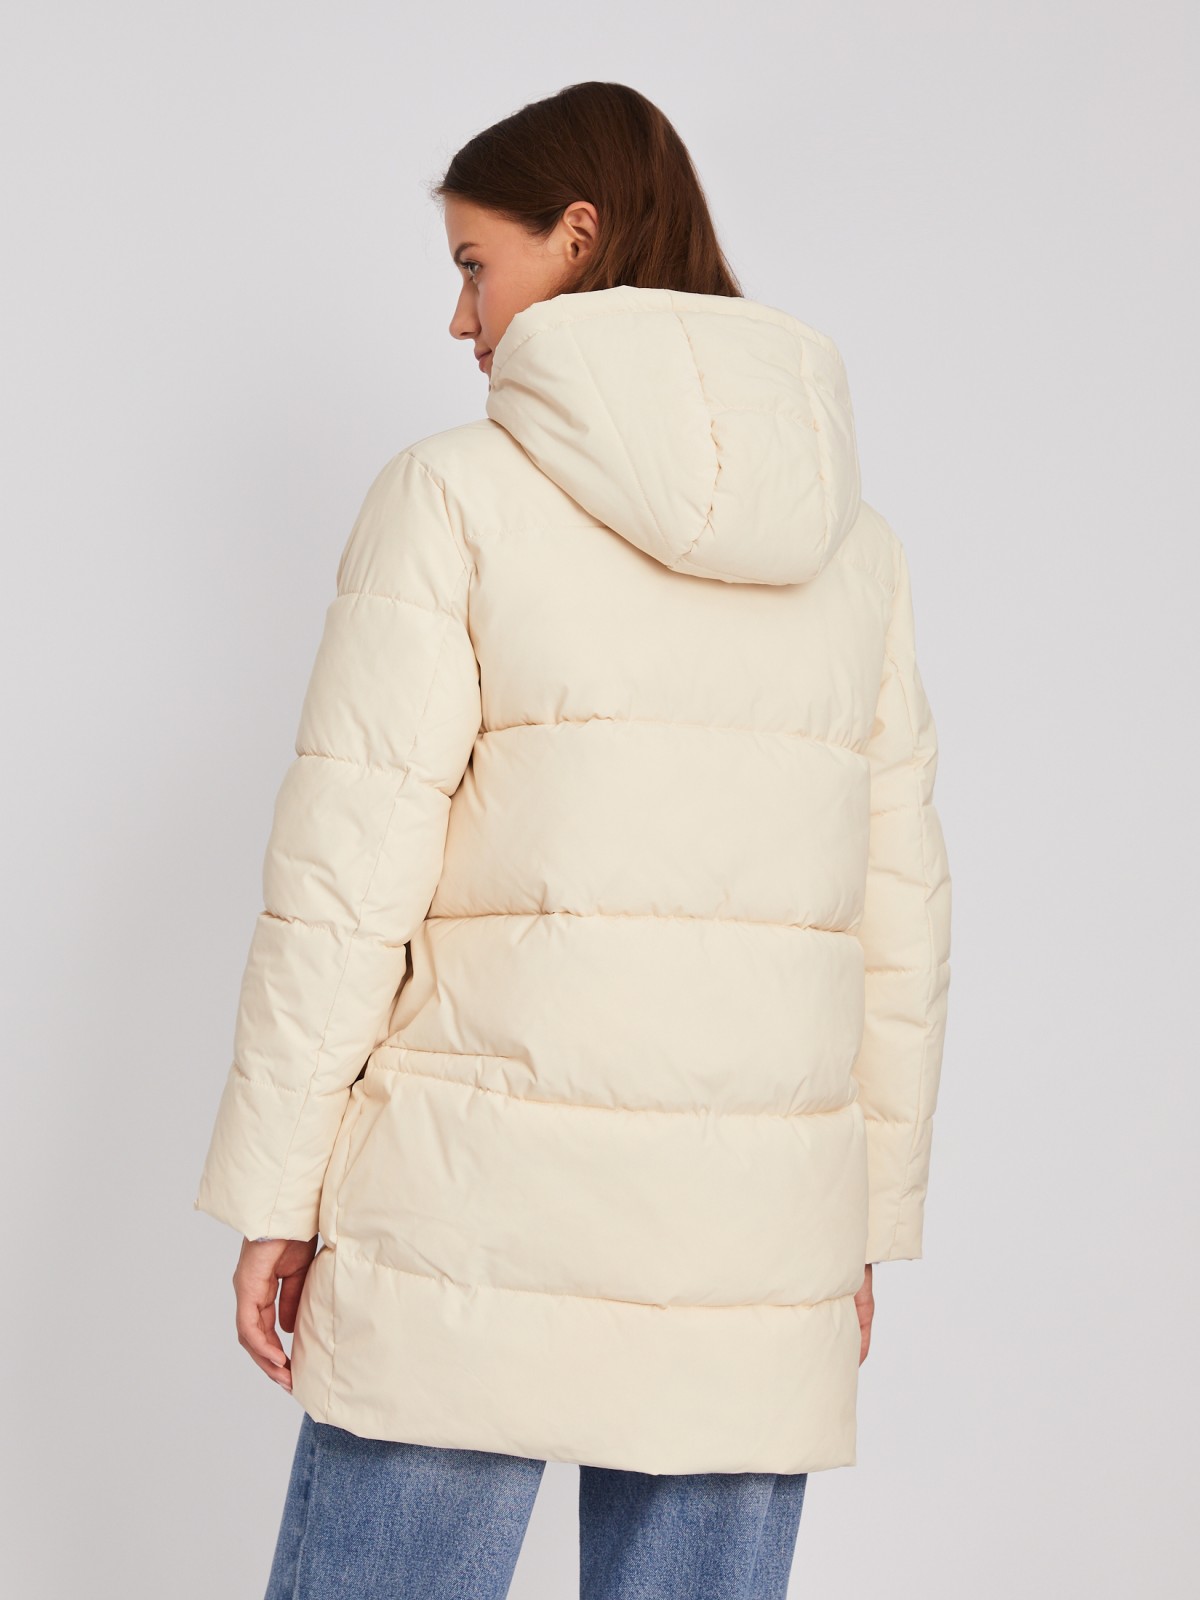 Тёплая стёганая куртка-пальто с капюшоном zolla 023345202114, цвет молоко, размер XS - фото 5